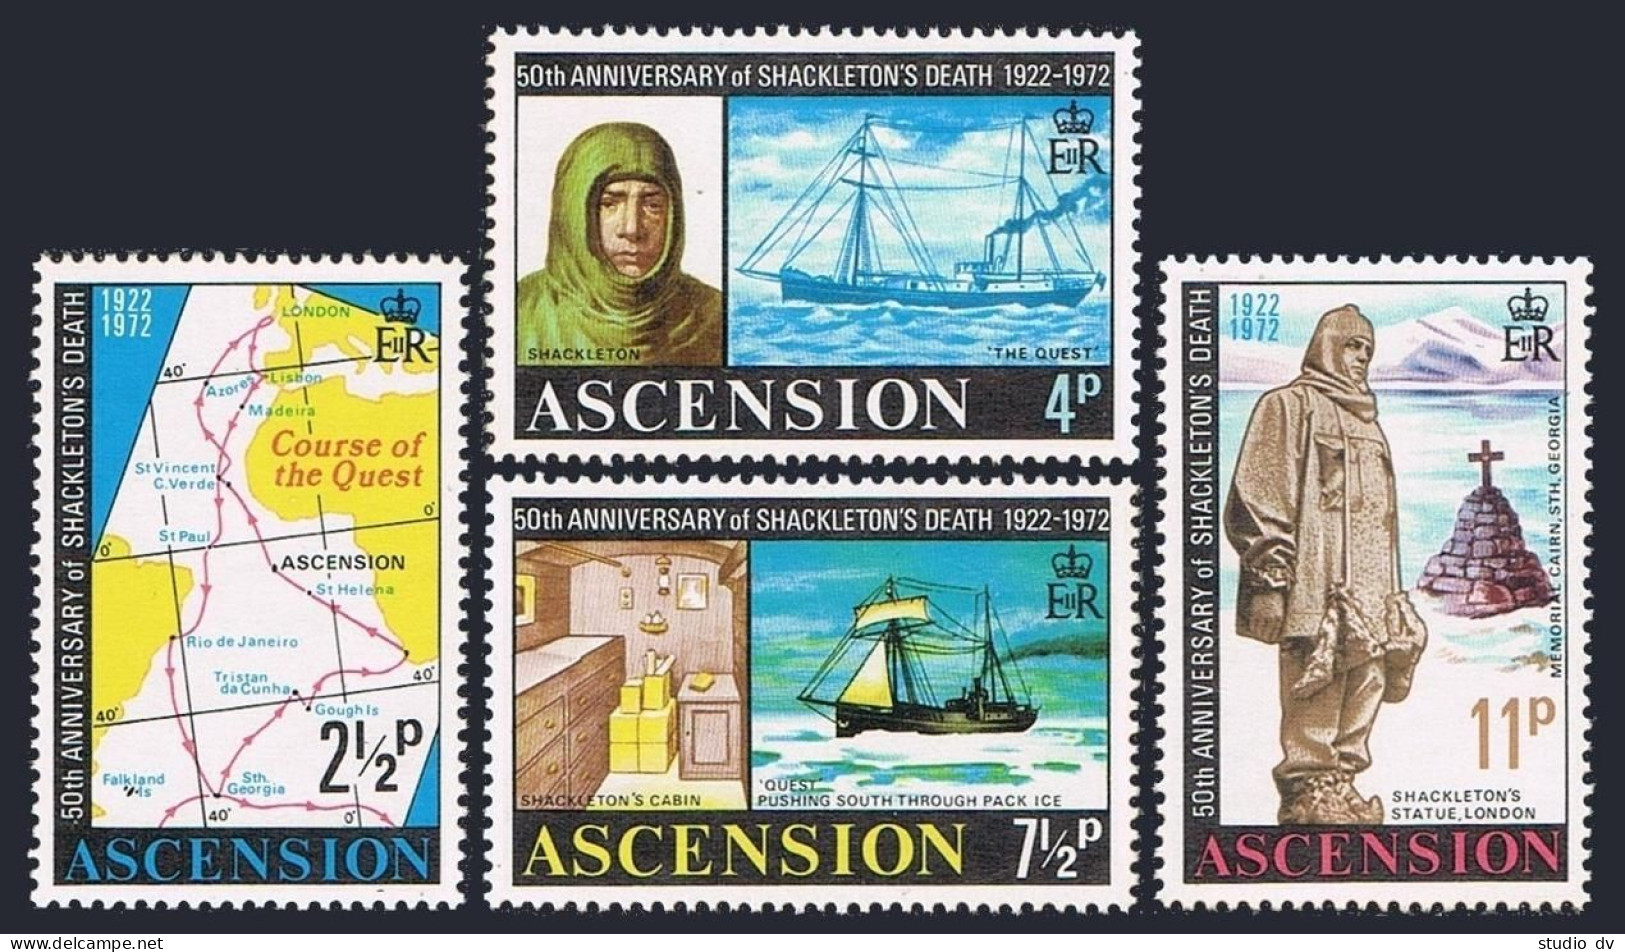 Ascension 160-163,163a,MNH. Ernest Shackleton,Antarctic Explorer,1972.Map,Ships. - Ascension (Ile De L')